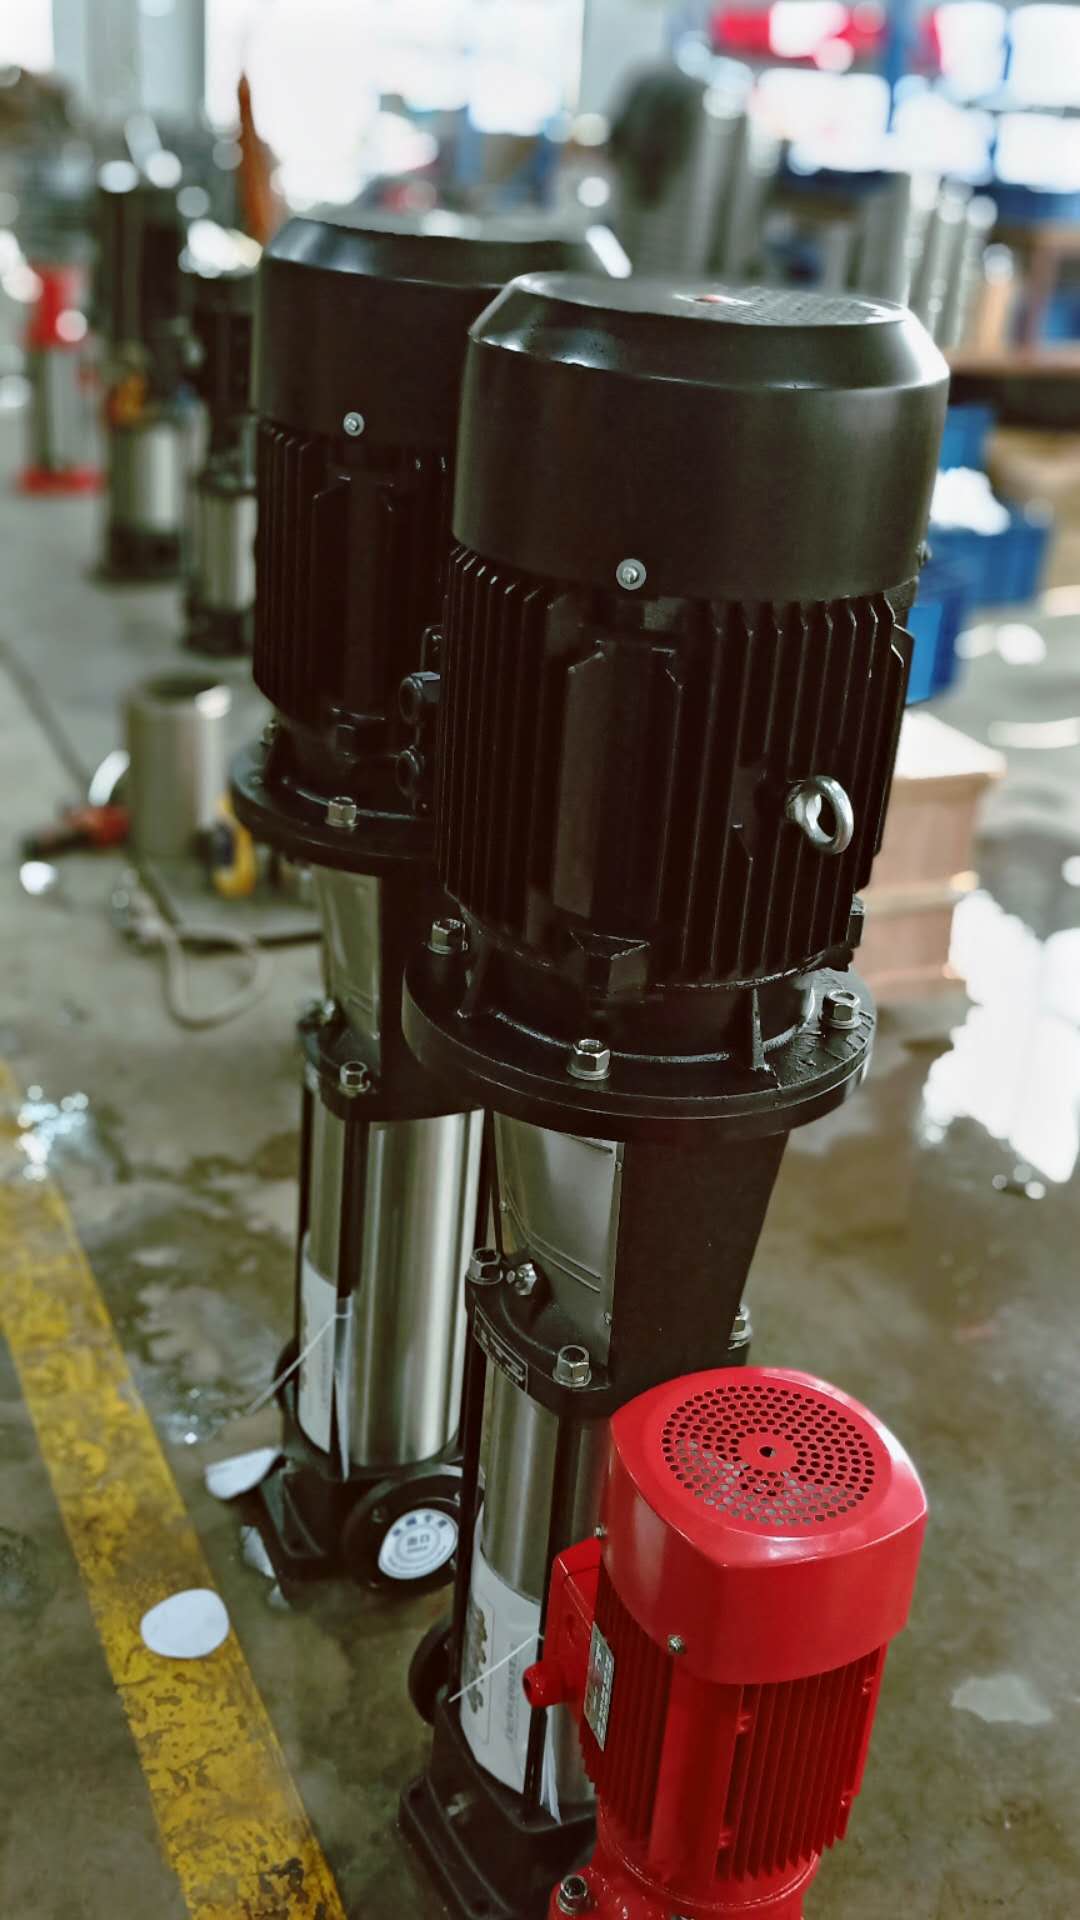 枣庄市CDL不锈钢冲压泵 32CDLF4-150承接多种不锈钢多级泵型号/厂家视频多级泵试压图片